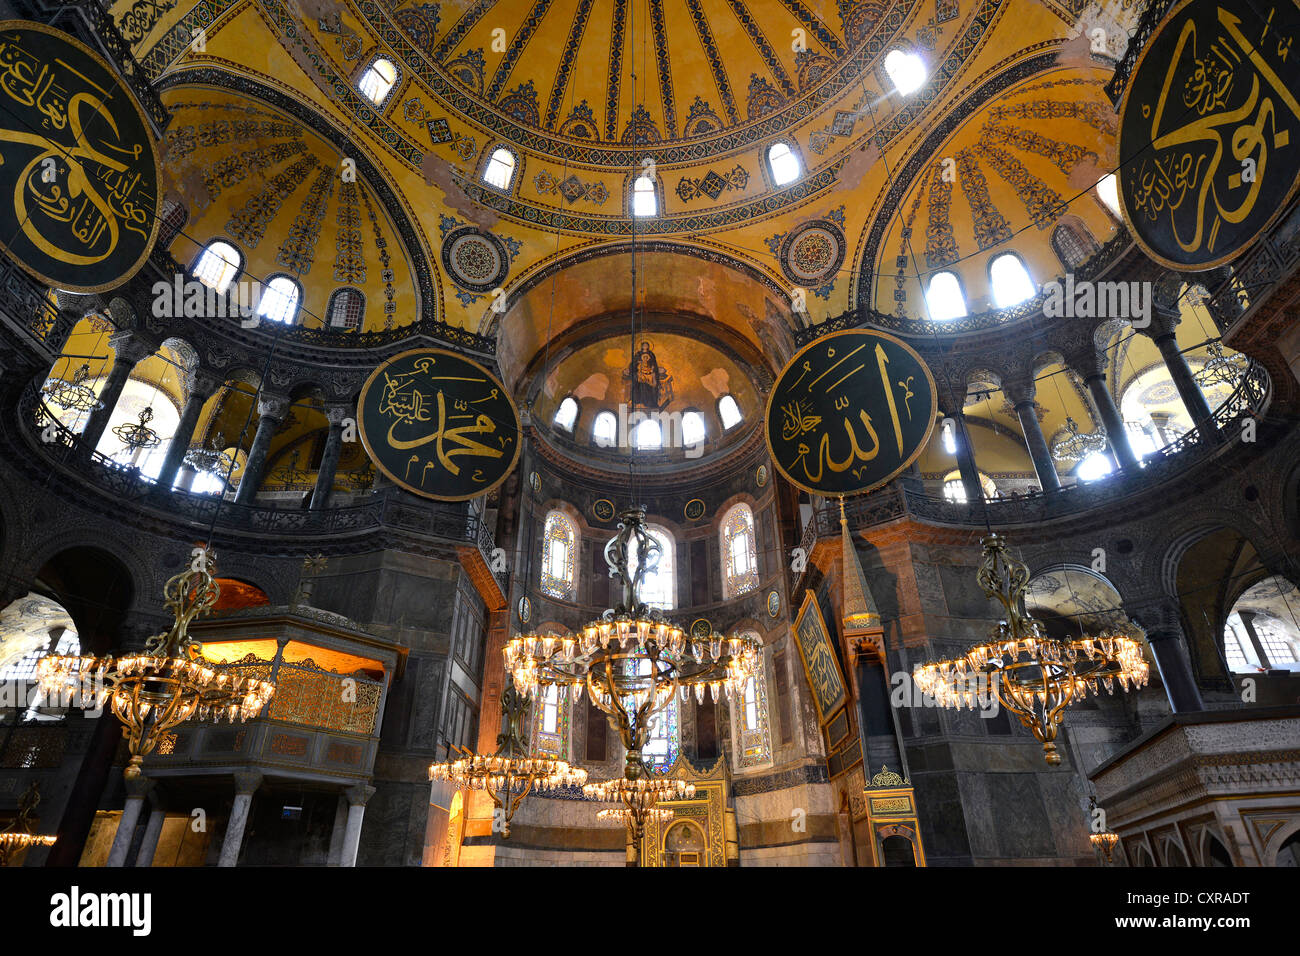 Innenansicht, Hauptraum, Kuppel, Zwickeln, Hagia Sophia, Ayasofya, UNESCO-Weltkulturerbe, Istanbul, Türkei, Europa Stockfoto